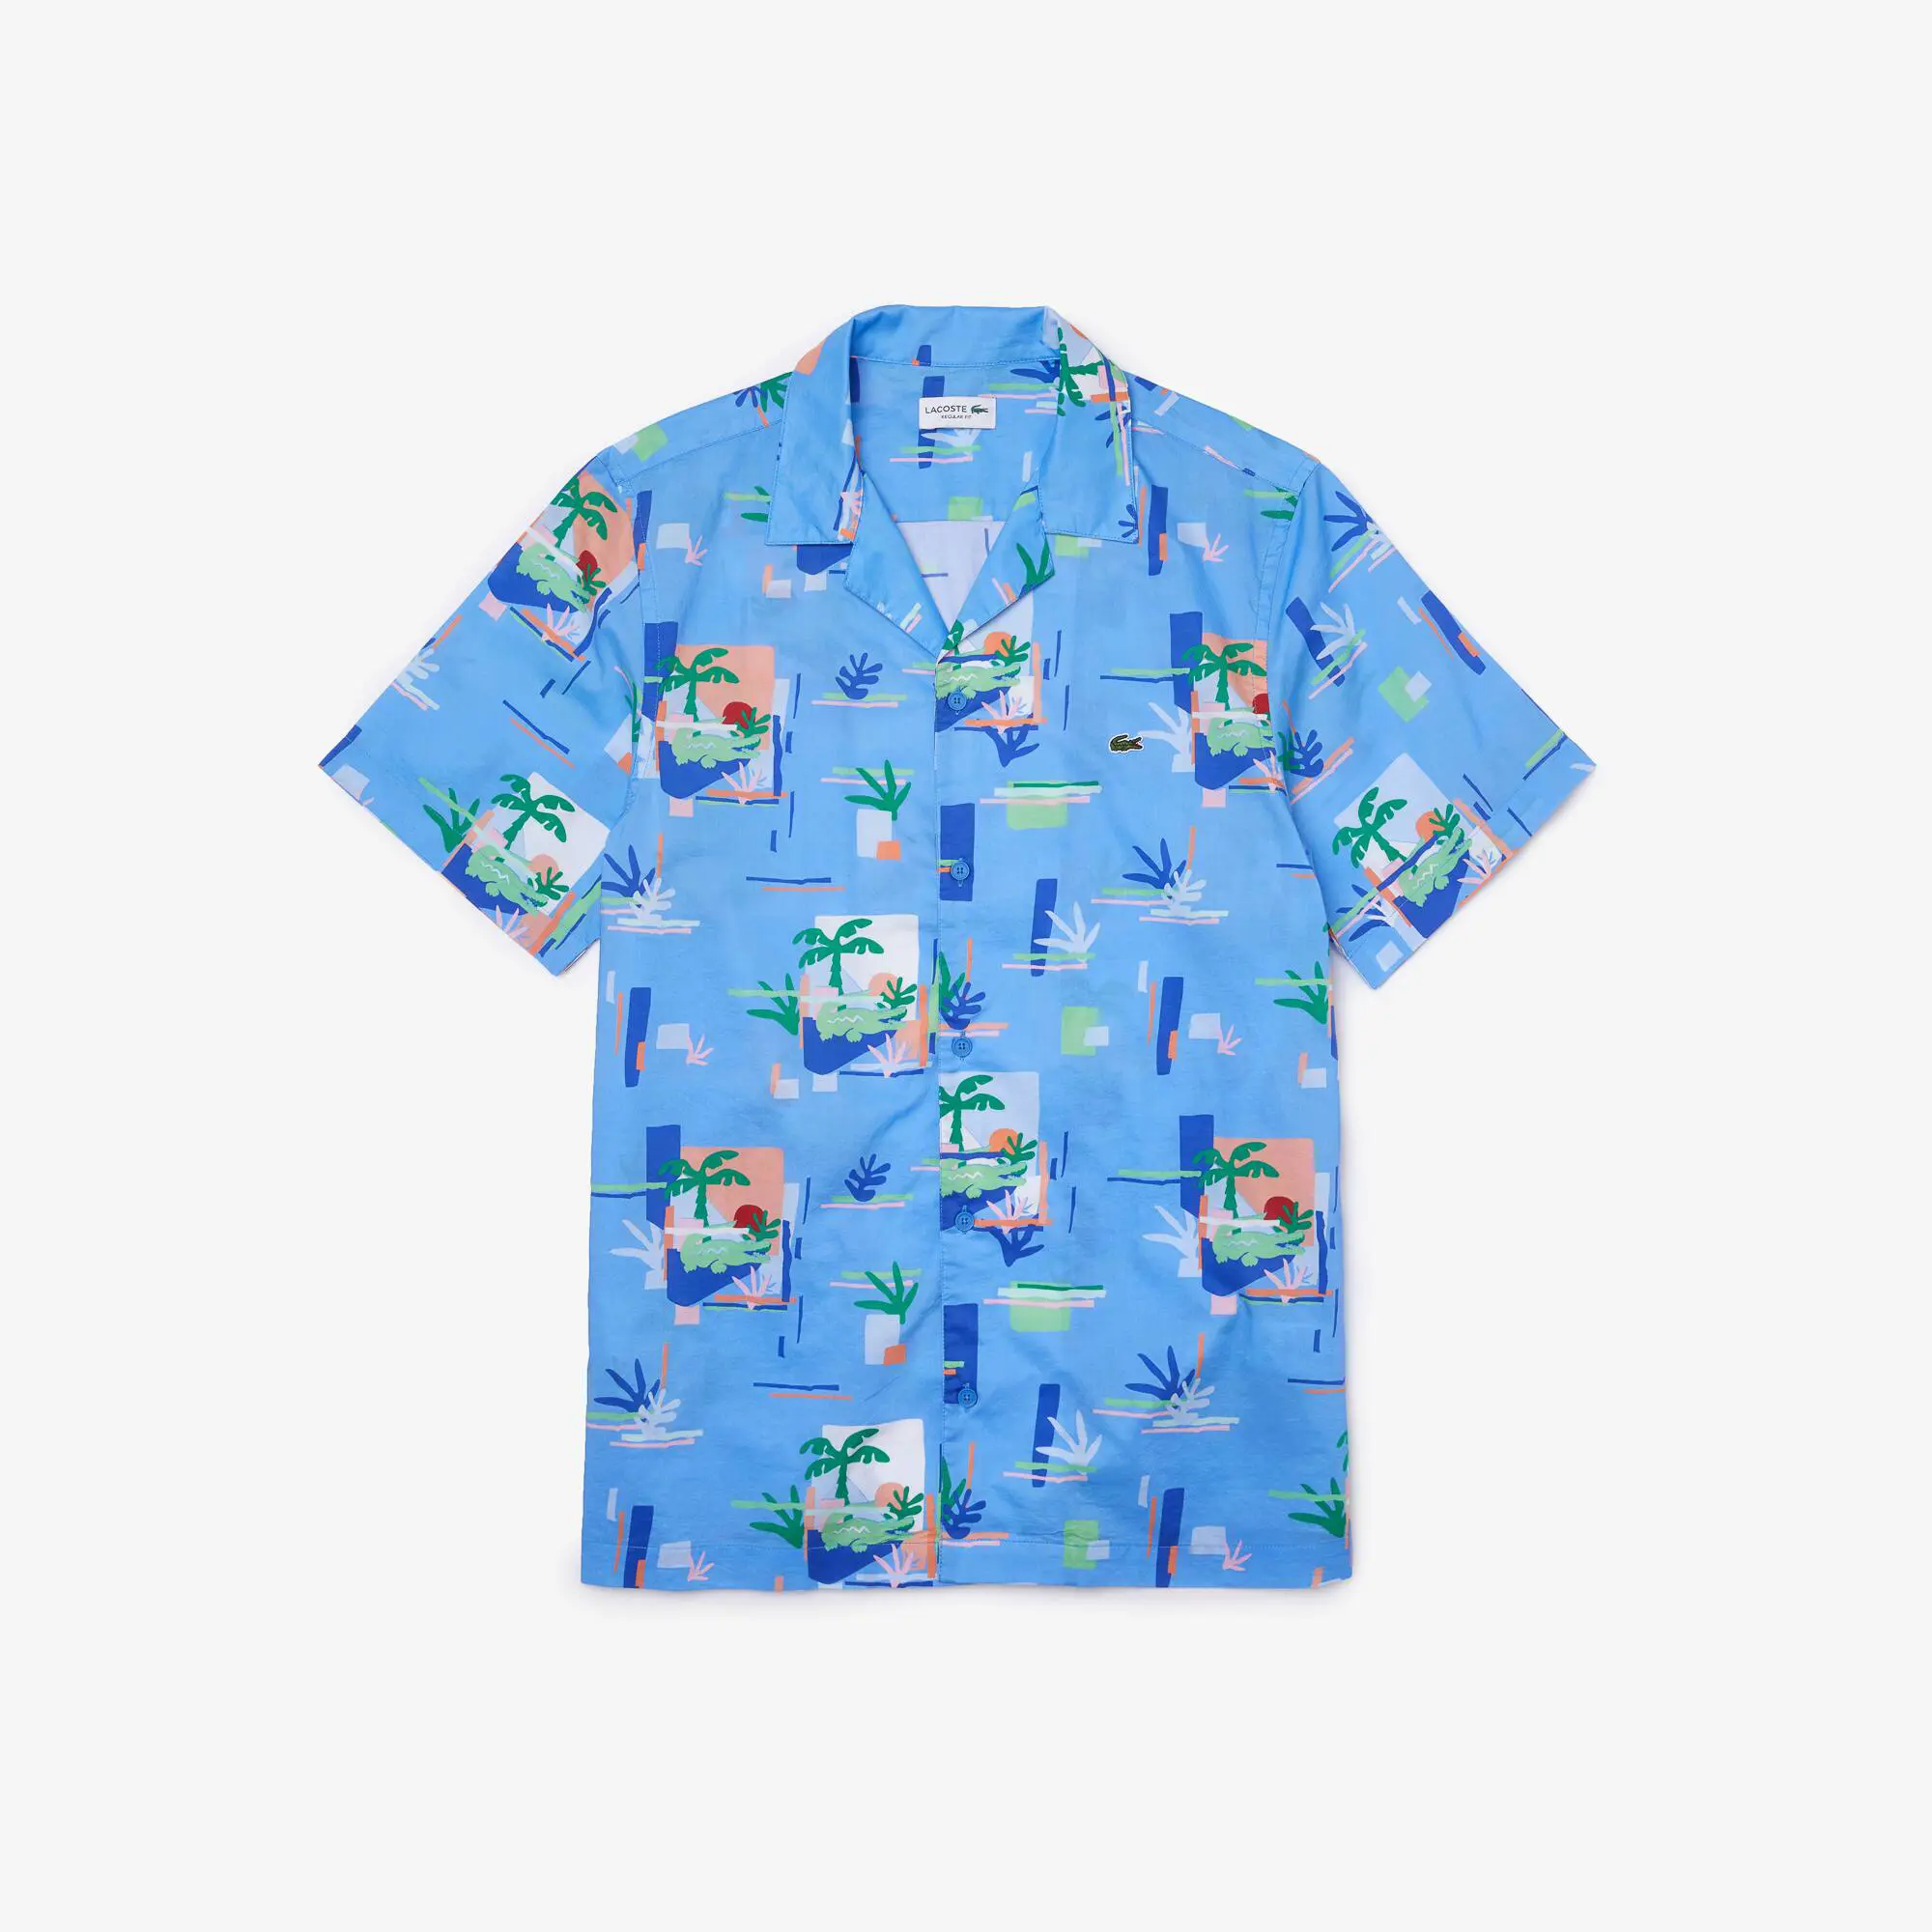 Lacoste Men's Print Cotton Voile Hawaiian Shirt. 2